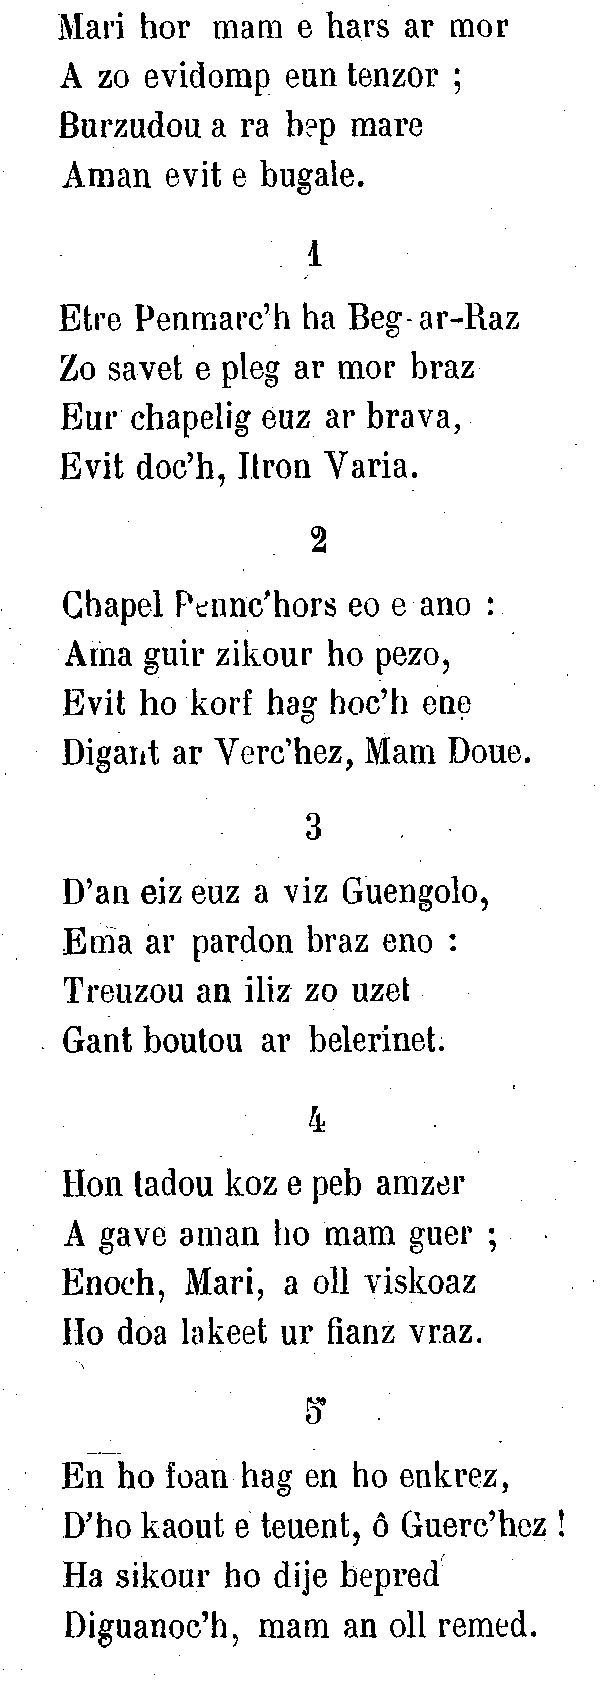 Pouldreuzic (Bretagne) : Le Vieux cantique (Discan), partie 1.